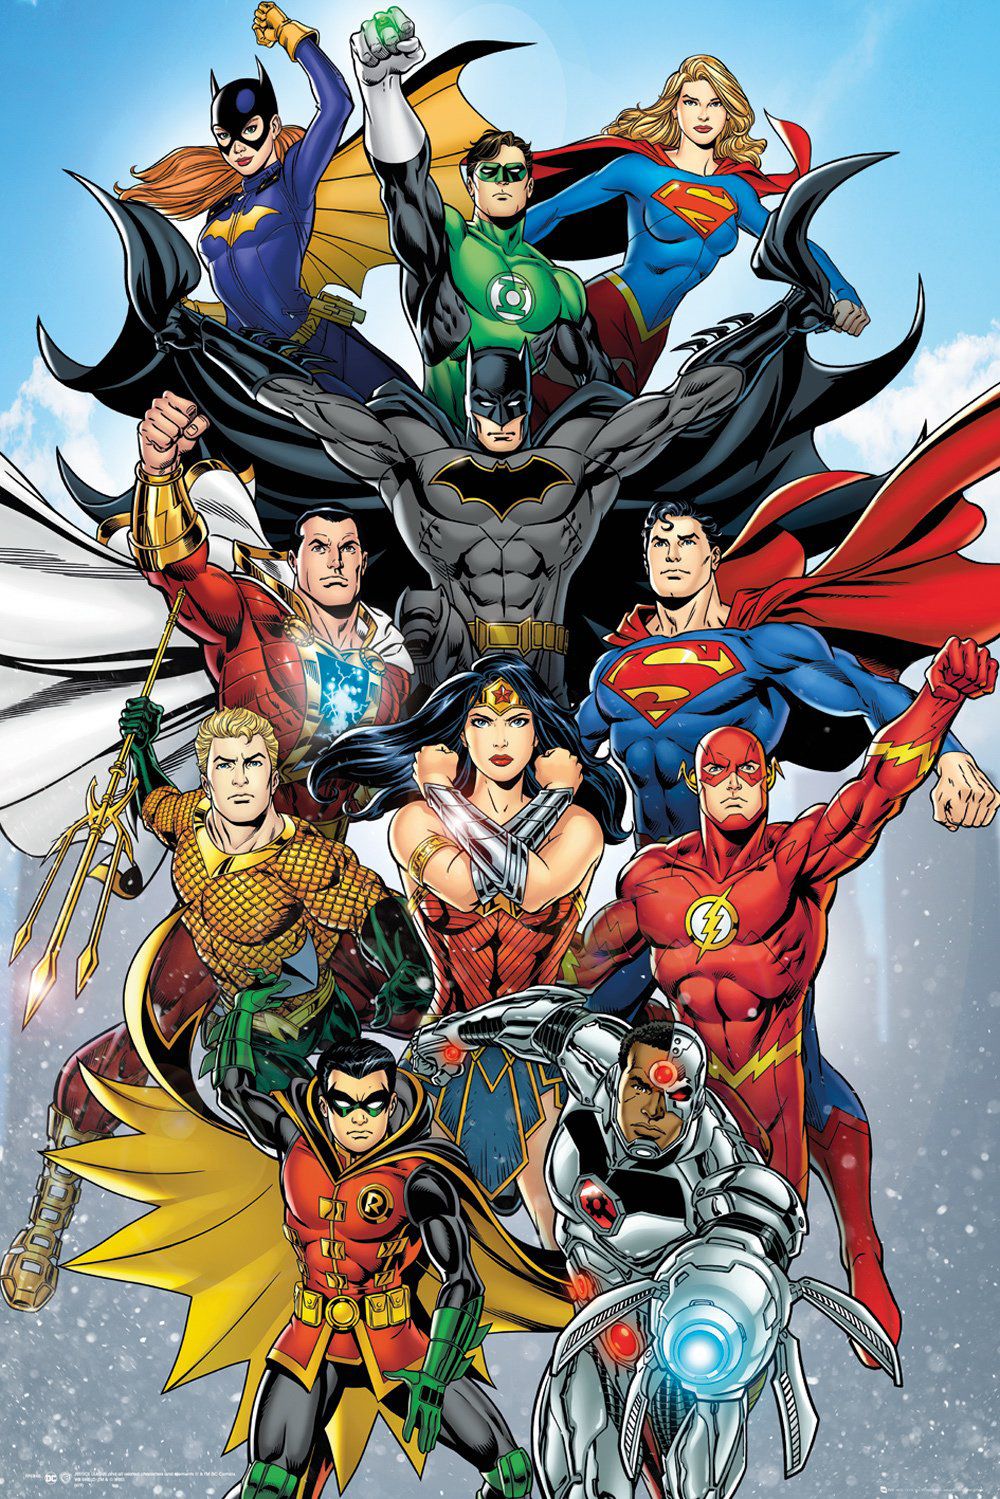 DC Comics Poster Rebirth Vertical. Dc comics wallpaper, Dc comics poster, Dc comics art